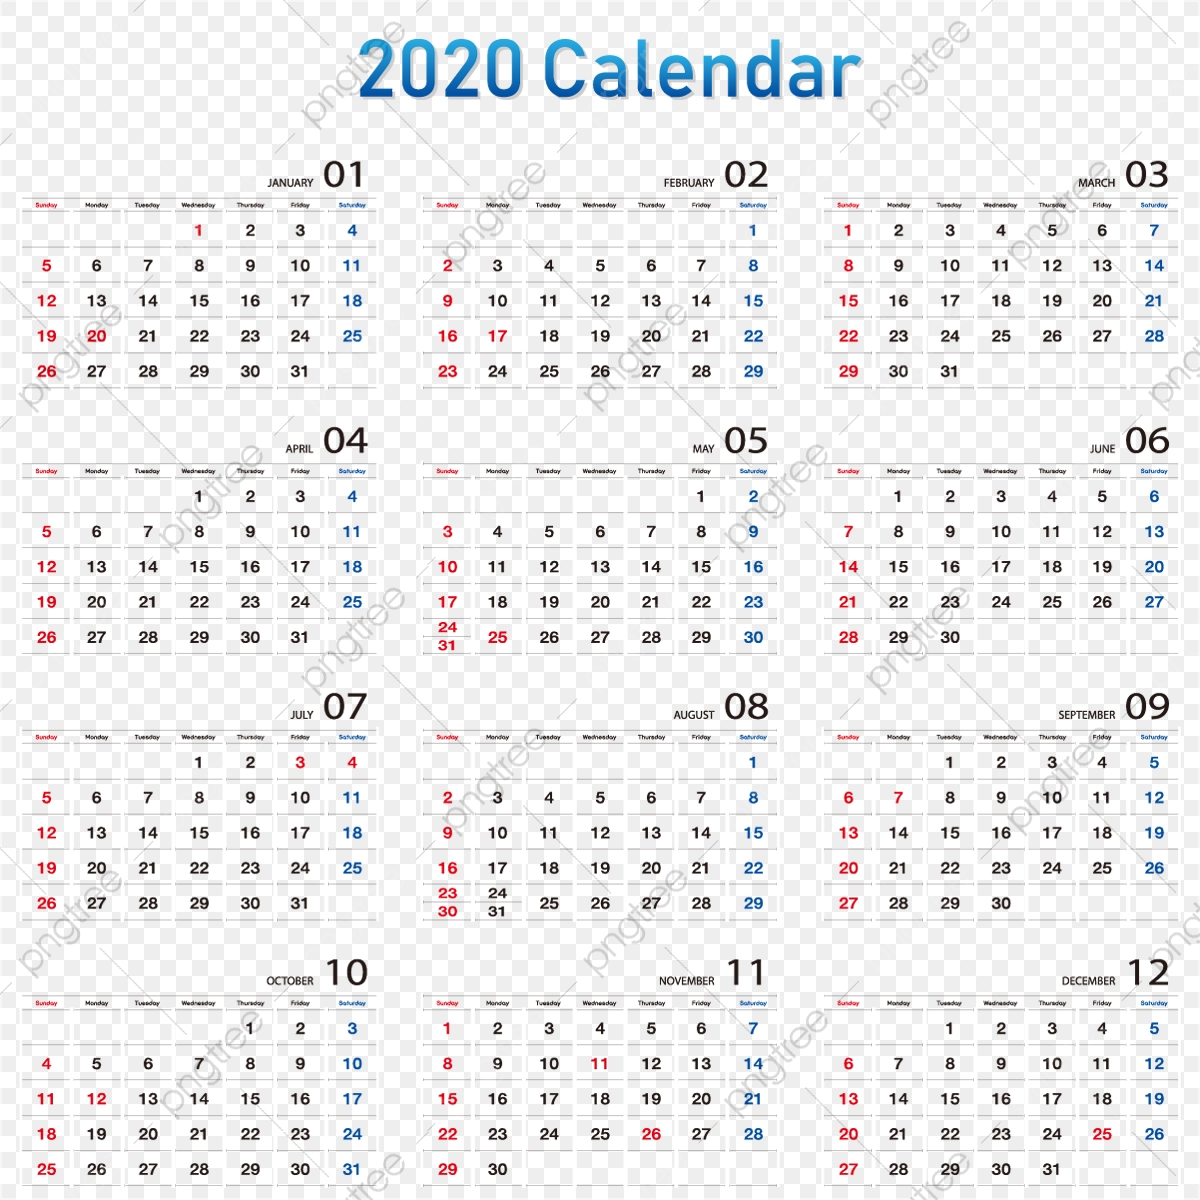 Calendar 2020 2020 Calendar, Date, Calendar, Week Png And